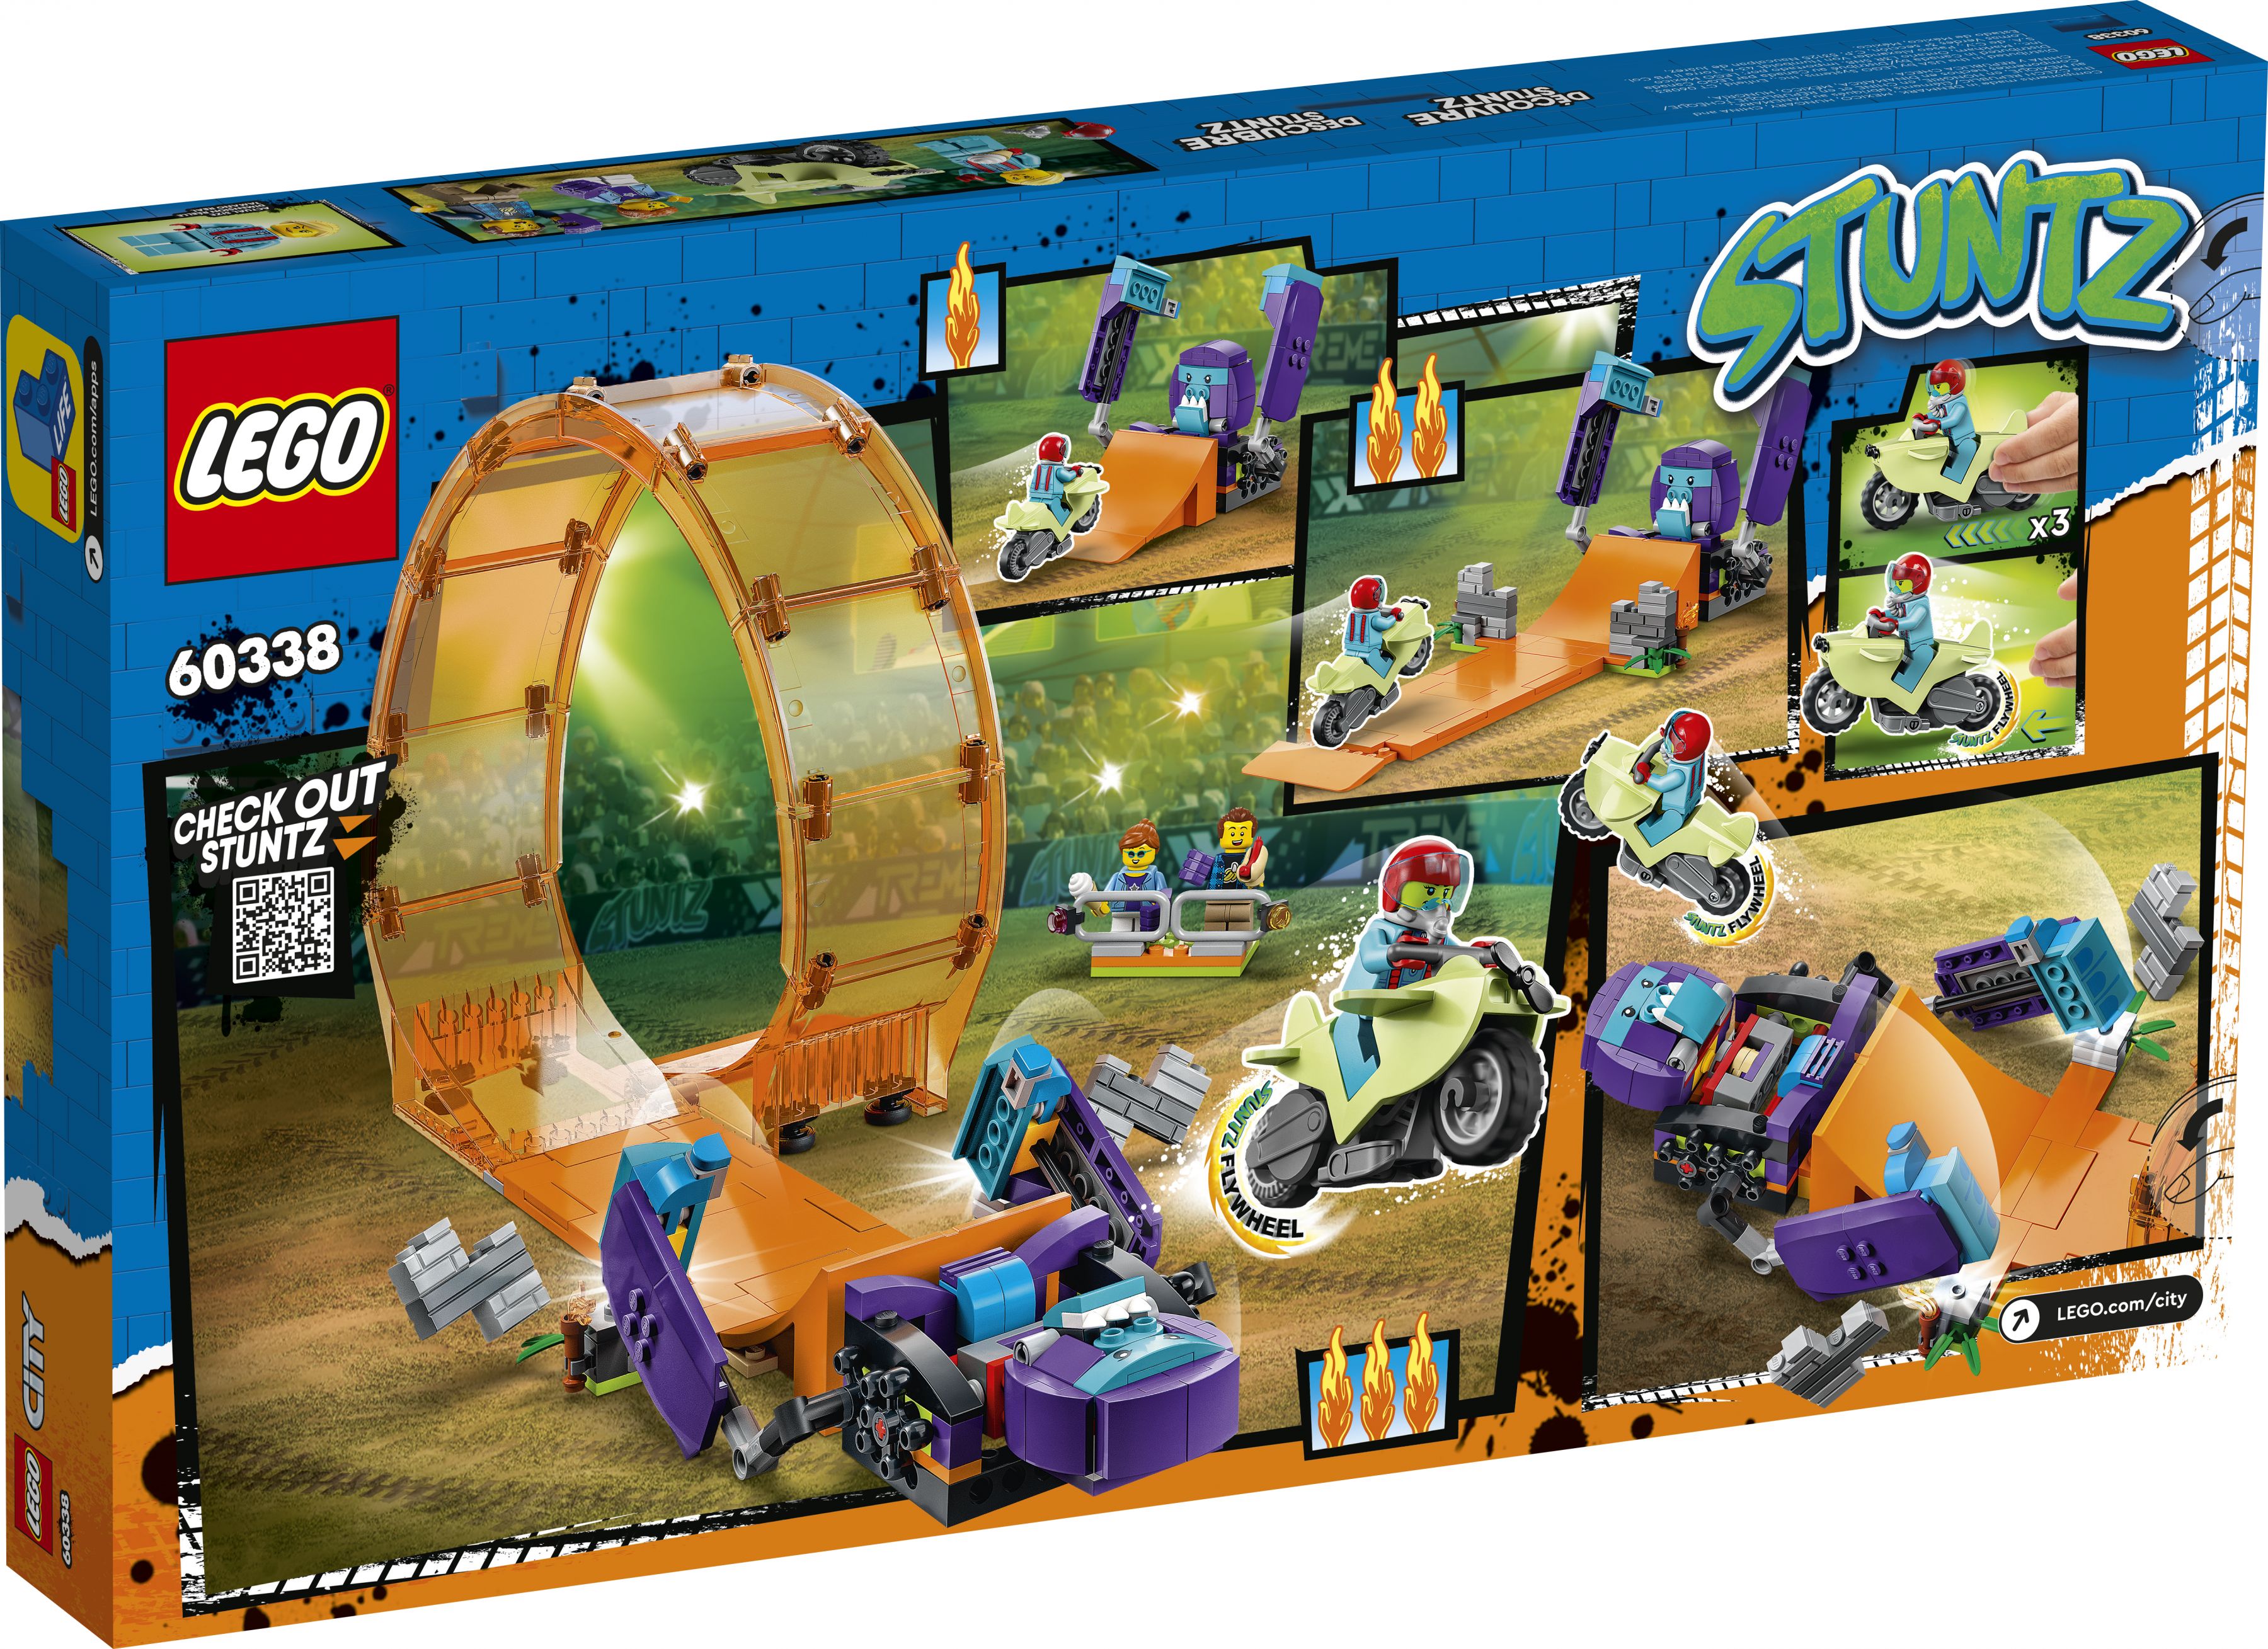 LEGO City 60338 Schimpansen-Stuntlooping LEGO_60338_Box5_v39.jpg